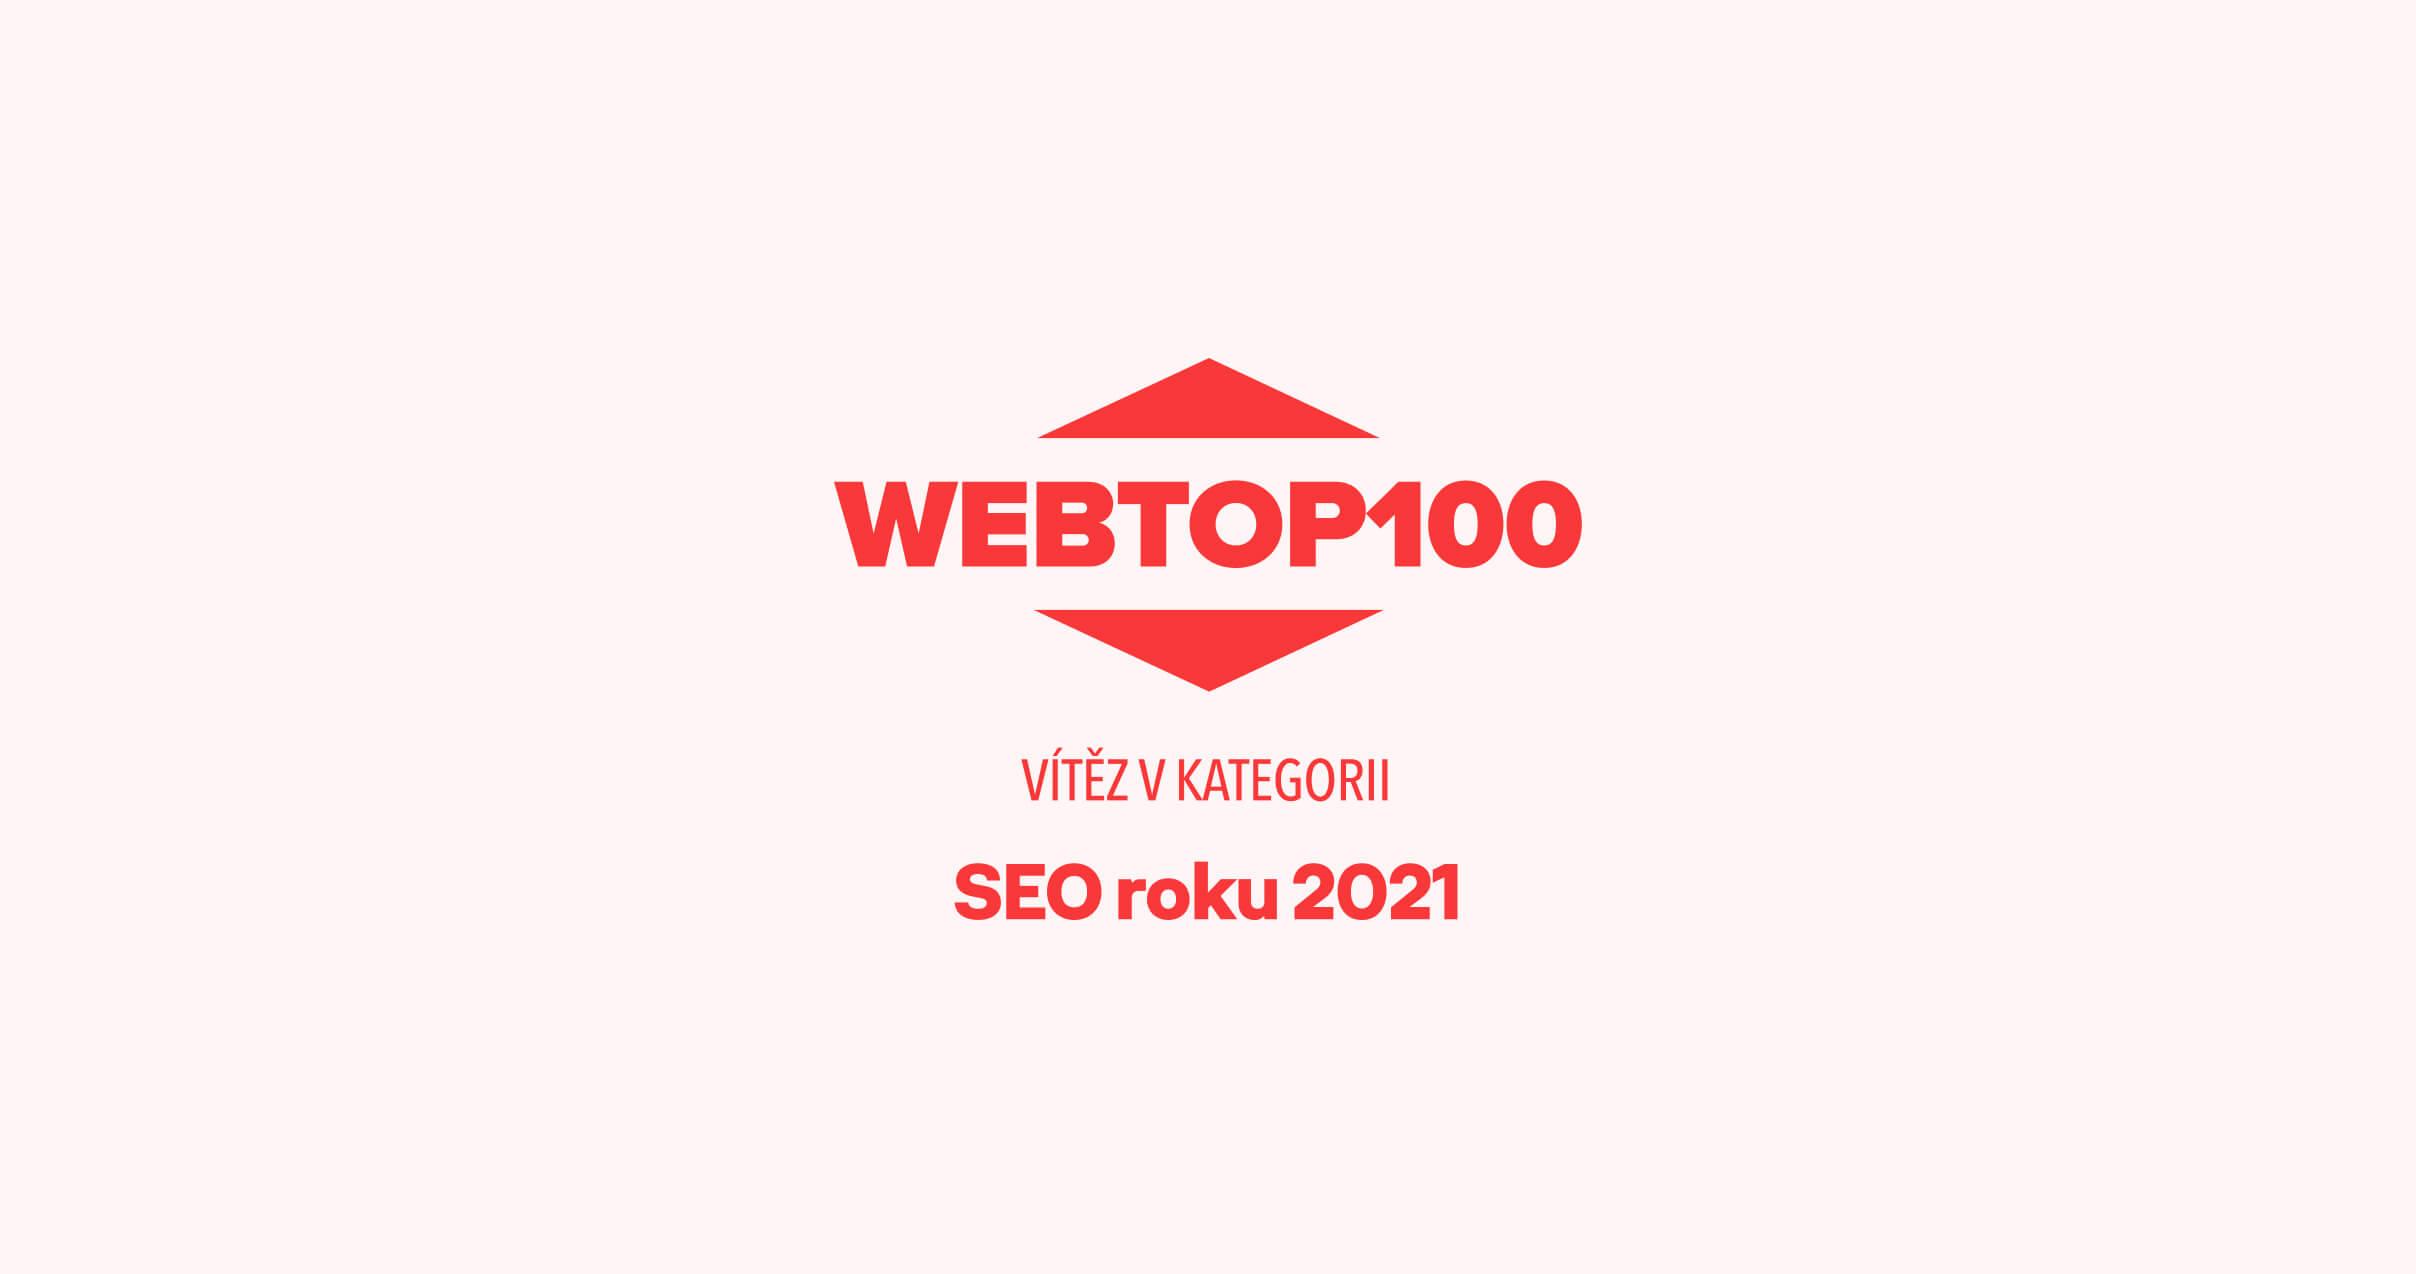 WEBTOP100 – vítěz v kategorii SEO roku 2021